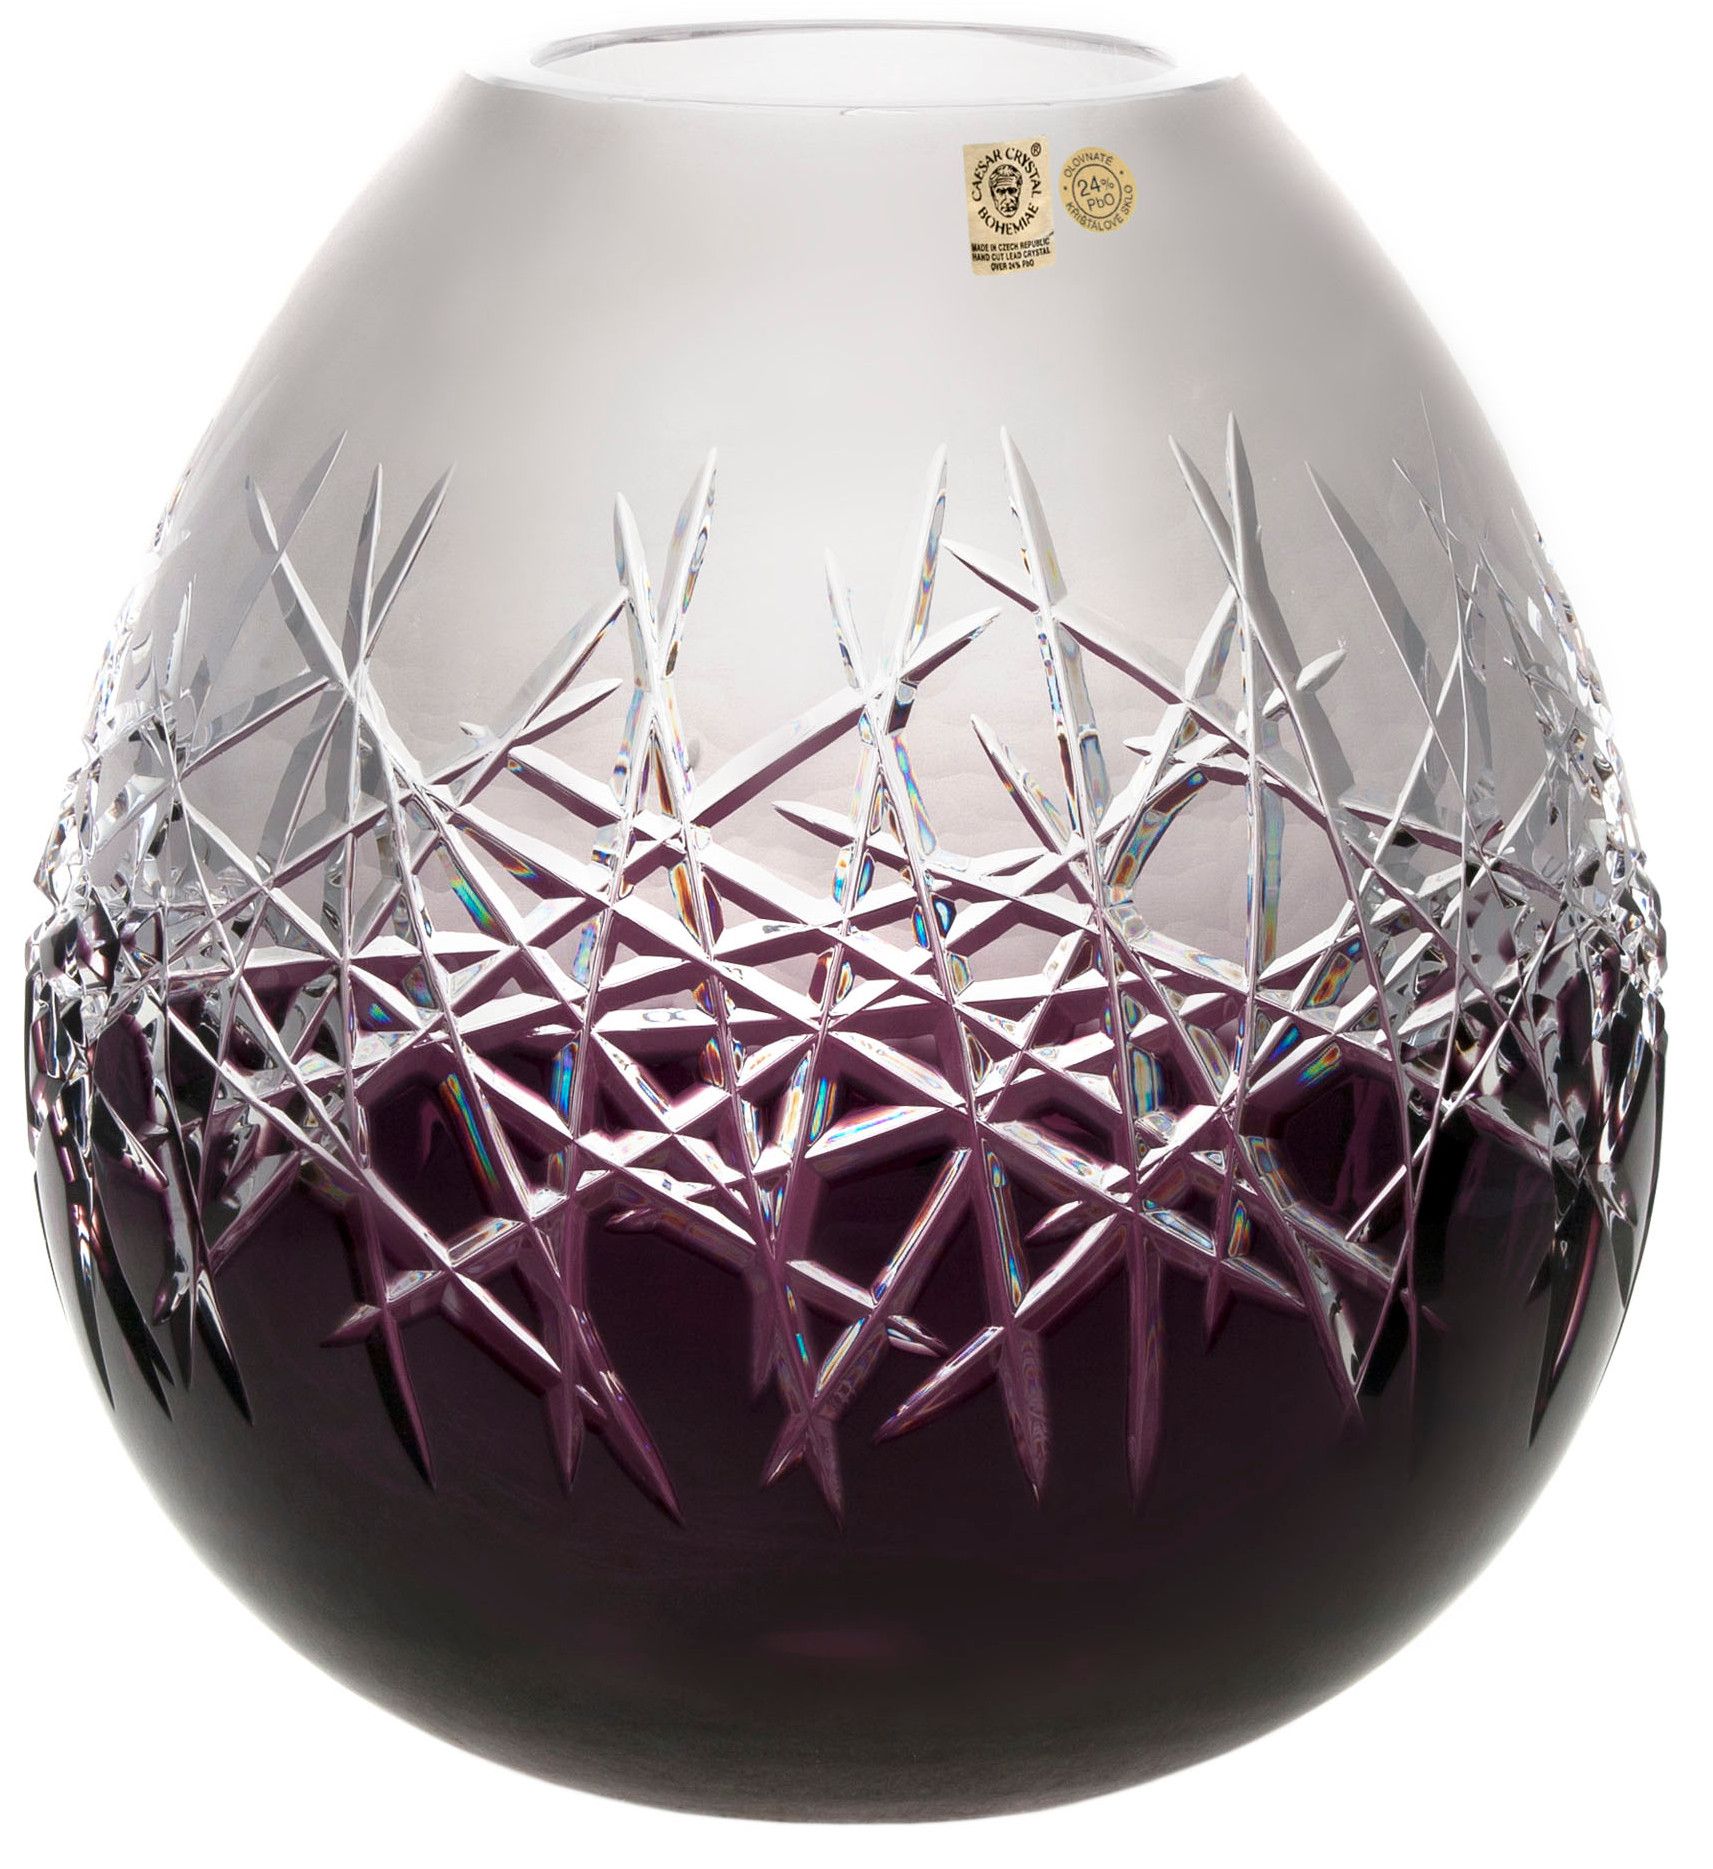 Krištáľová váza Hoarfrost, farba fialová, výška 280 mm